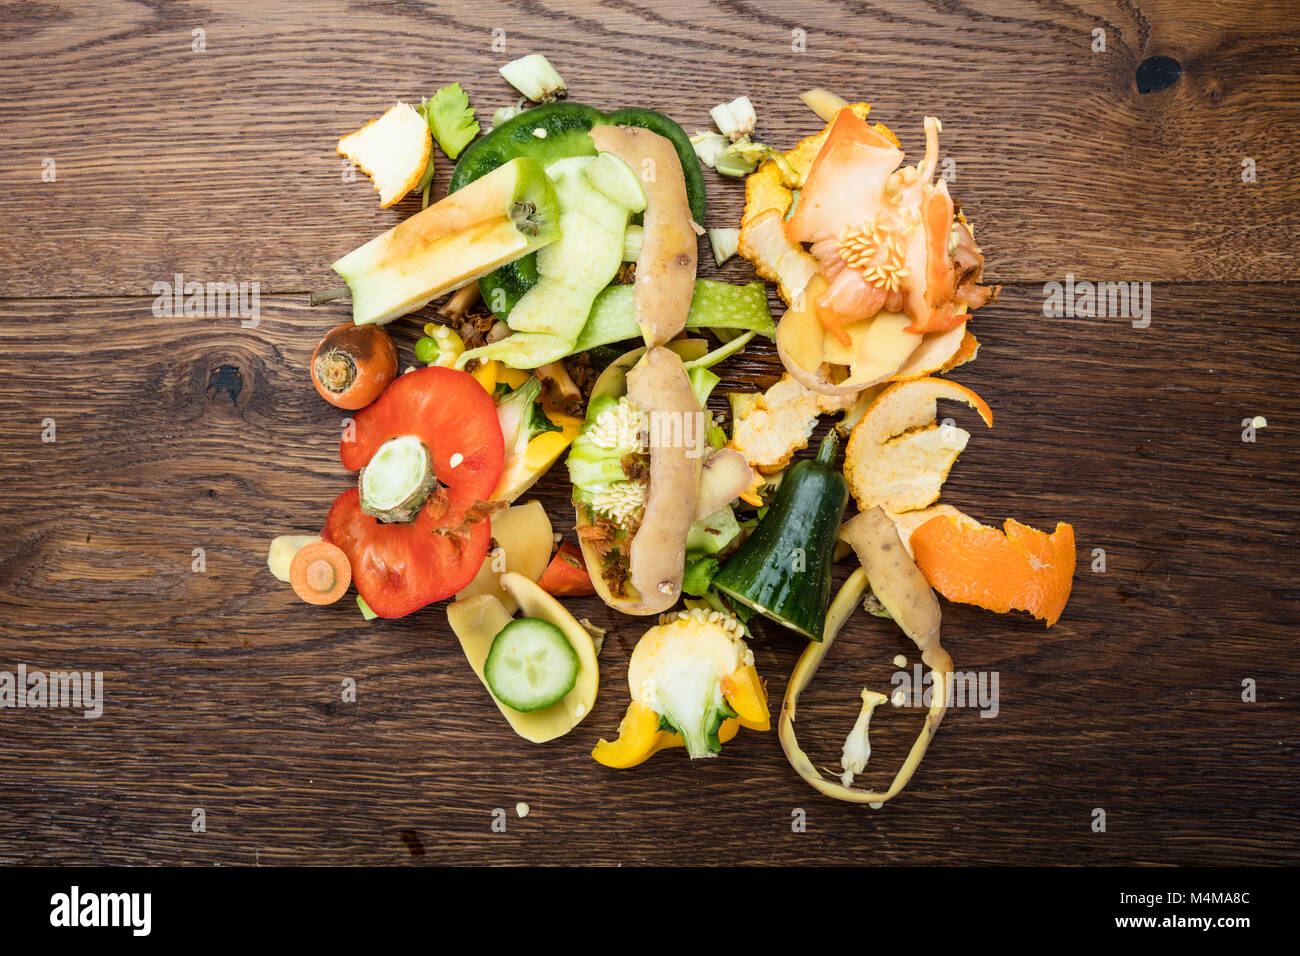 Portrait de pelures de fruits et légumes sur la table en bois Banque D'Images